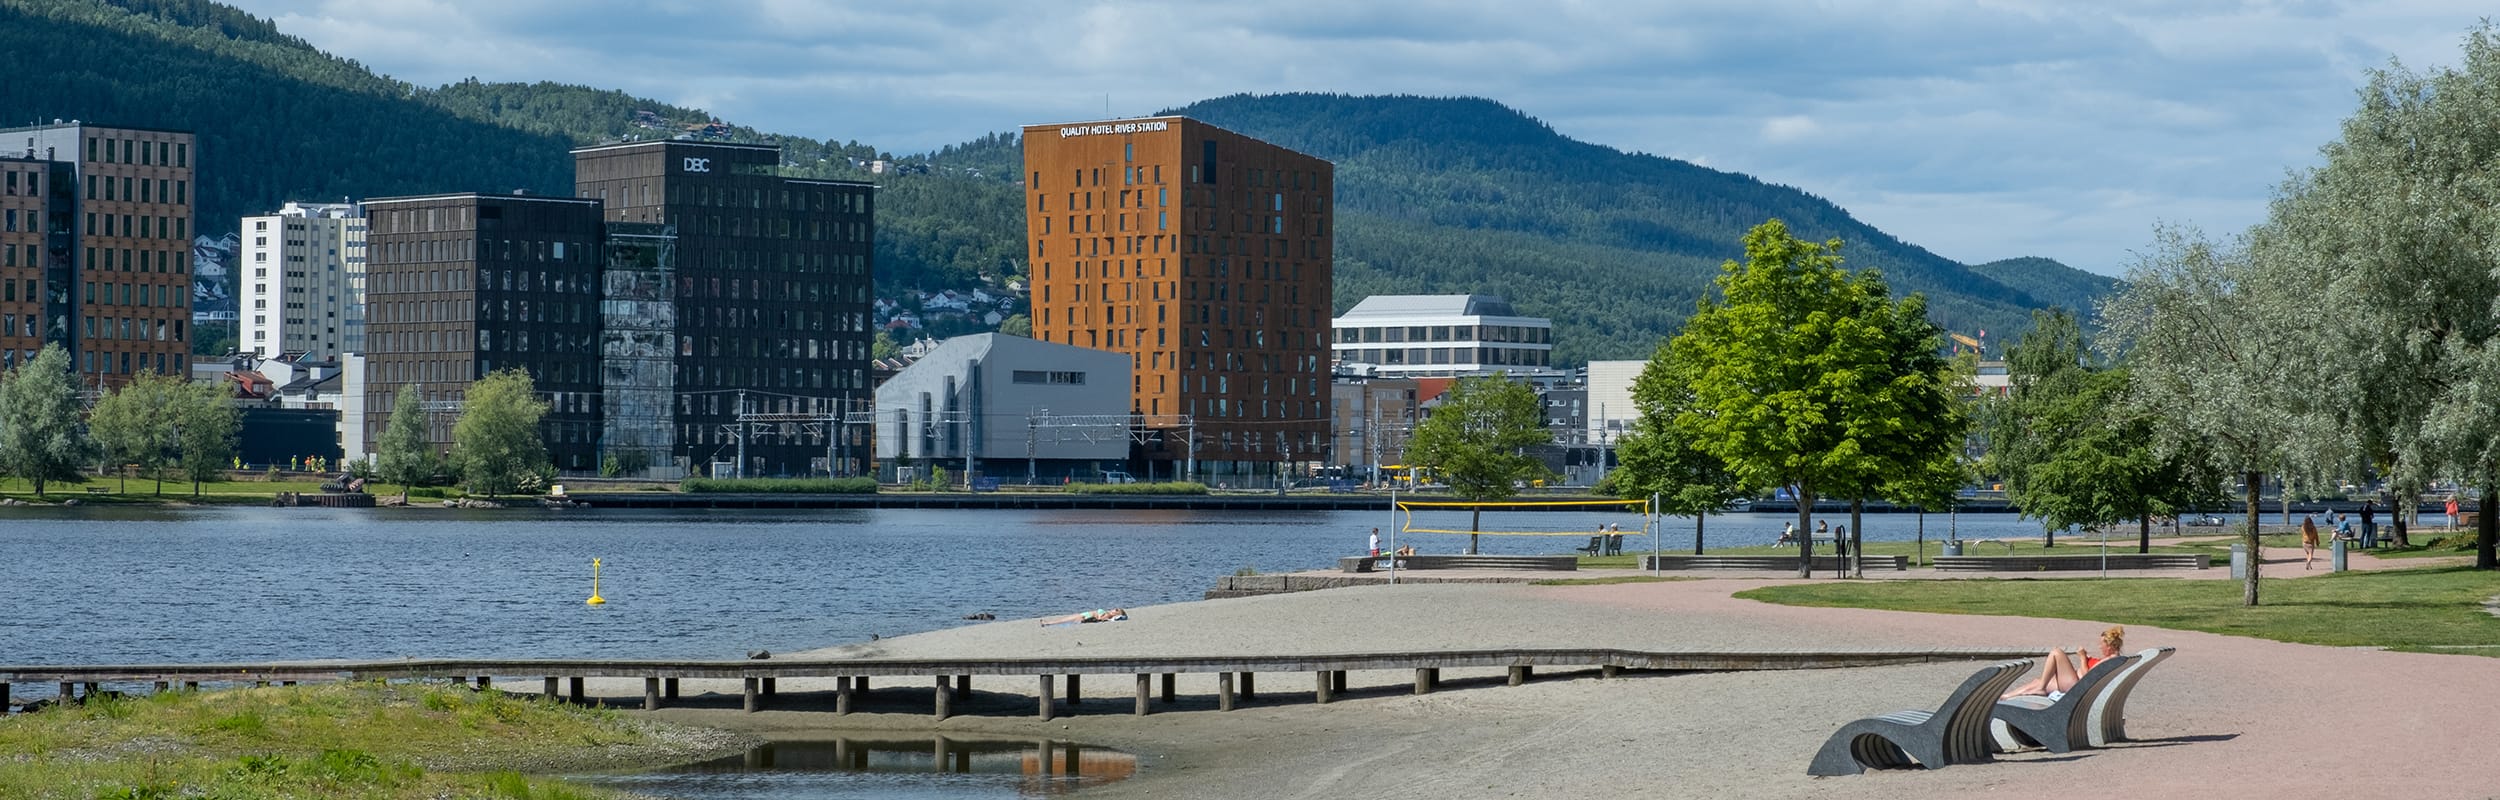 Bilde av Bragernes strand med høye bygninger på andre siden av Drammenselva.